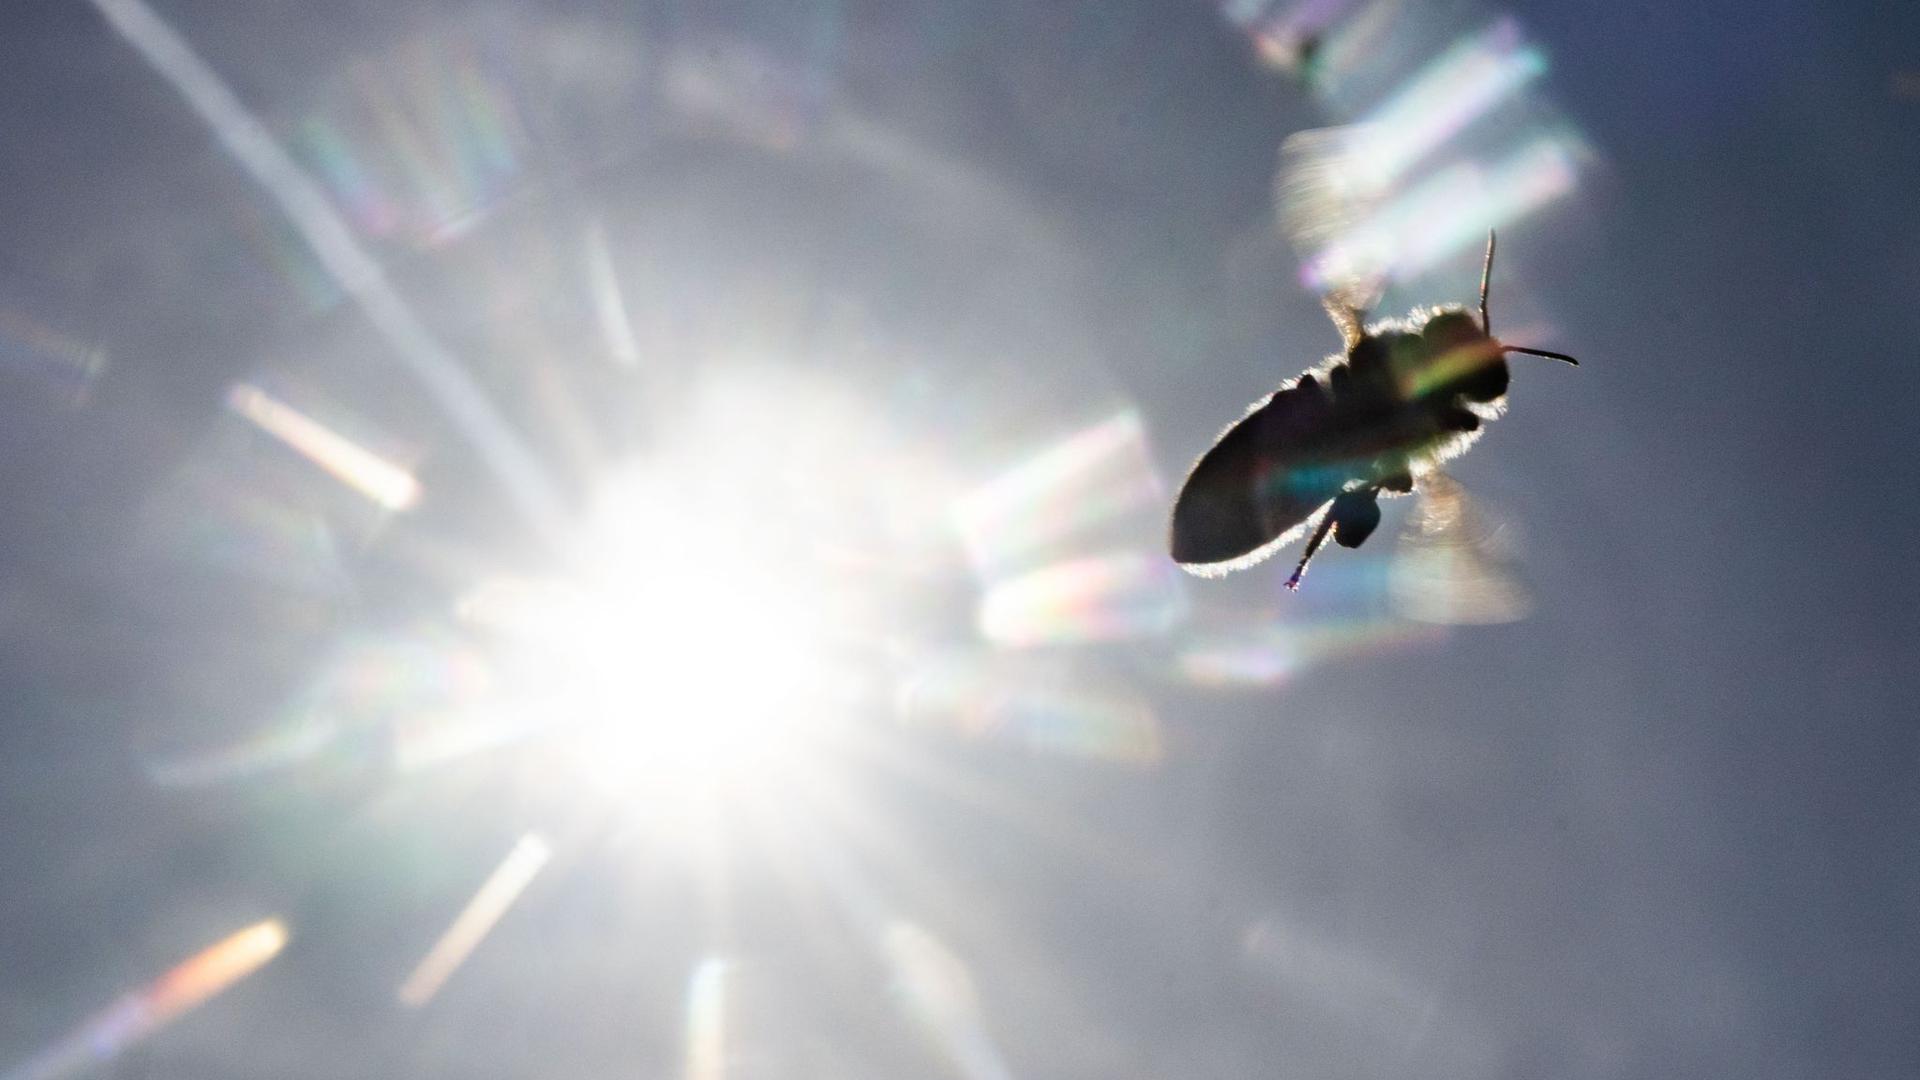 Vor der strahlenden Sonne, die ihre Reflexe auf dem Objektiv hinterlässt, fliegt am blauen Himmel eine Biene zurück zu ihrer Behausung.